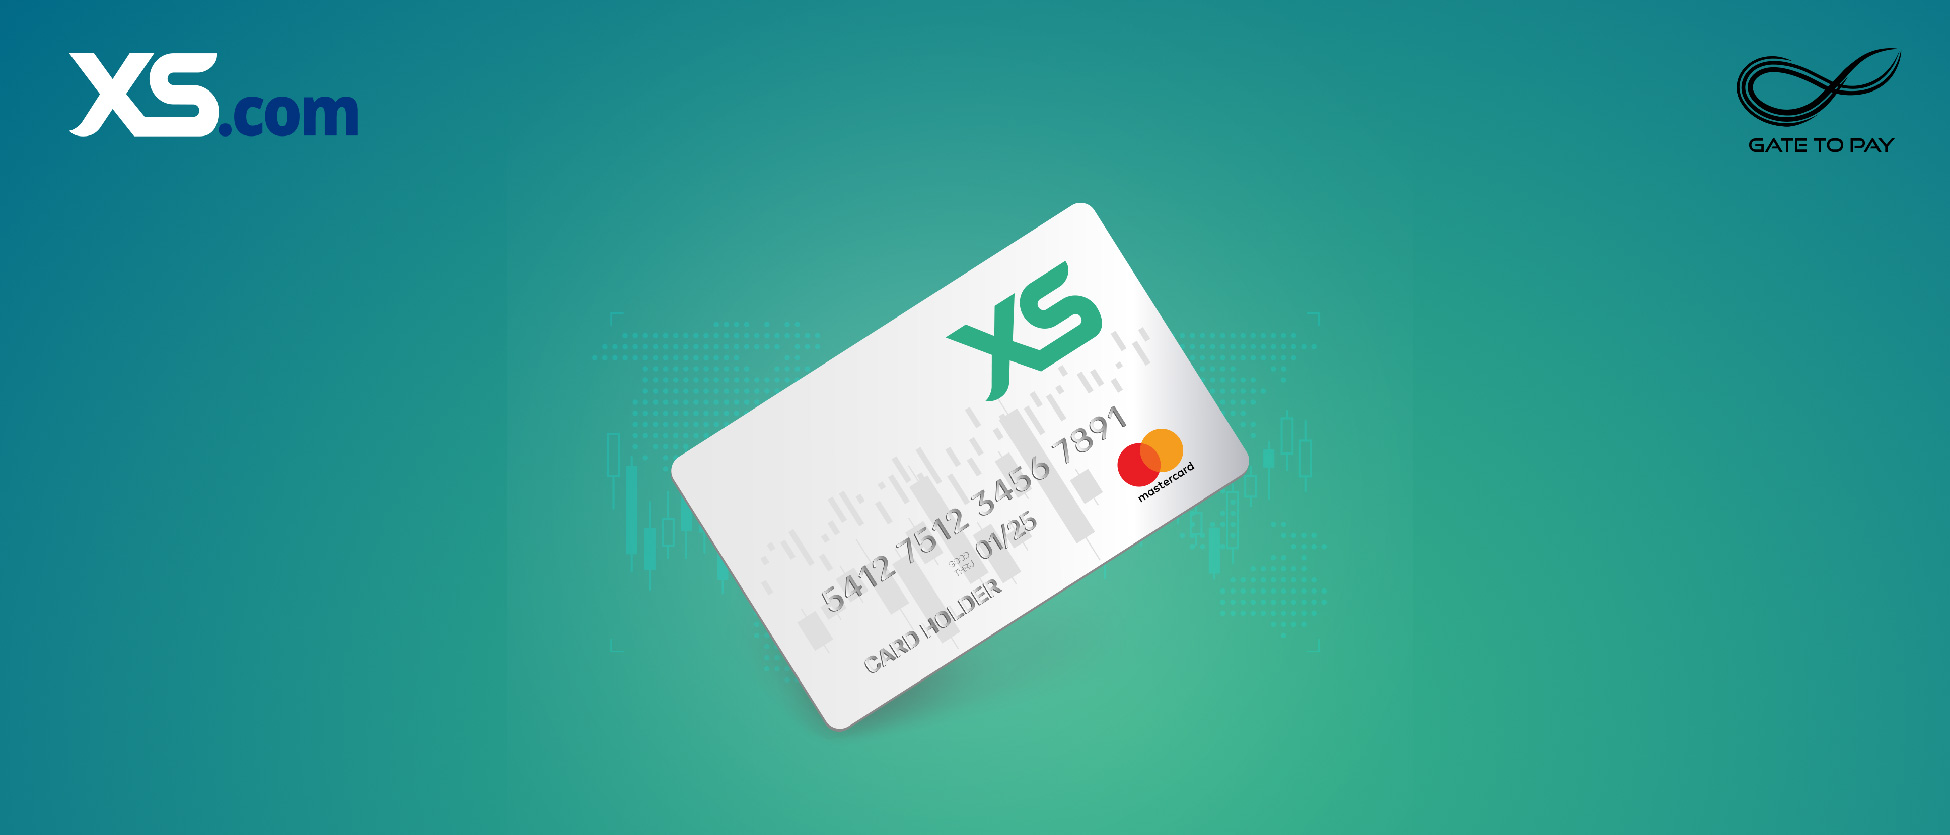 XS.com présente la carte Mastercard prépayée XS intégrée à l’application mobile « XS cartes »